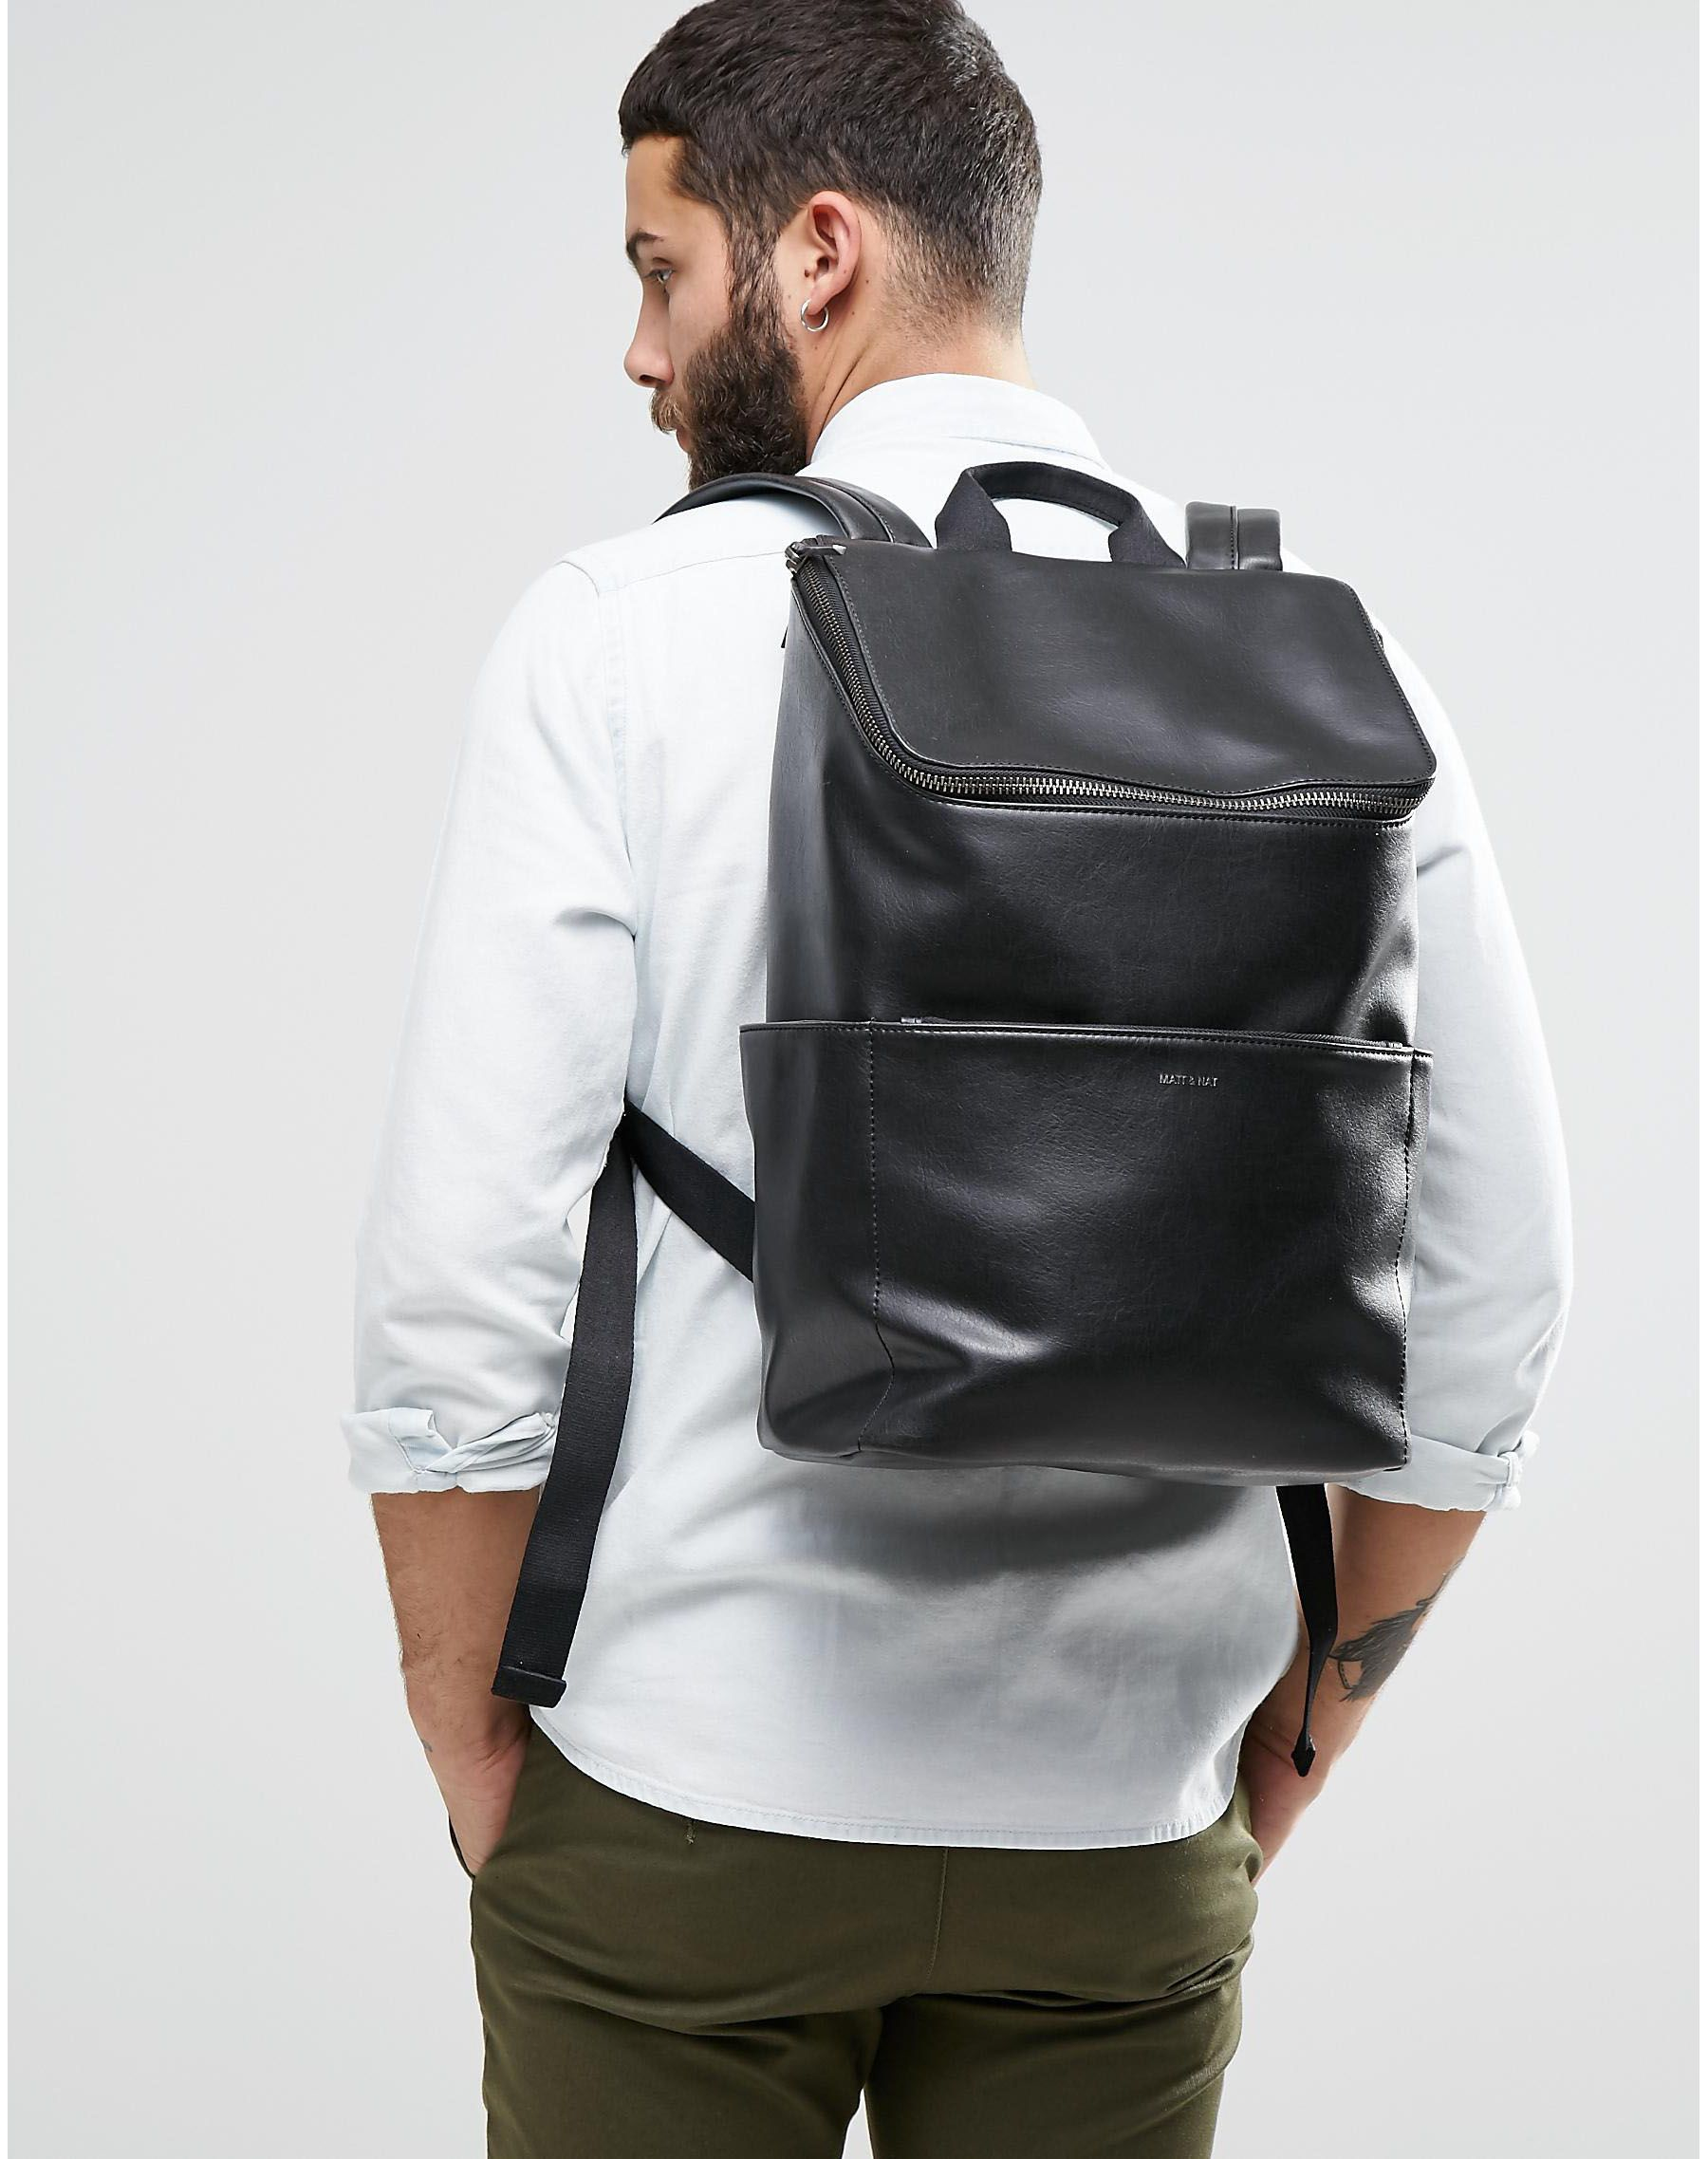 Matt & Nat Leather Dean Backpack in Black for Men - Lyst